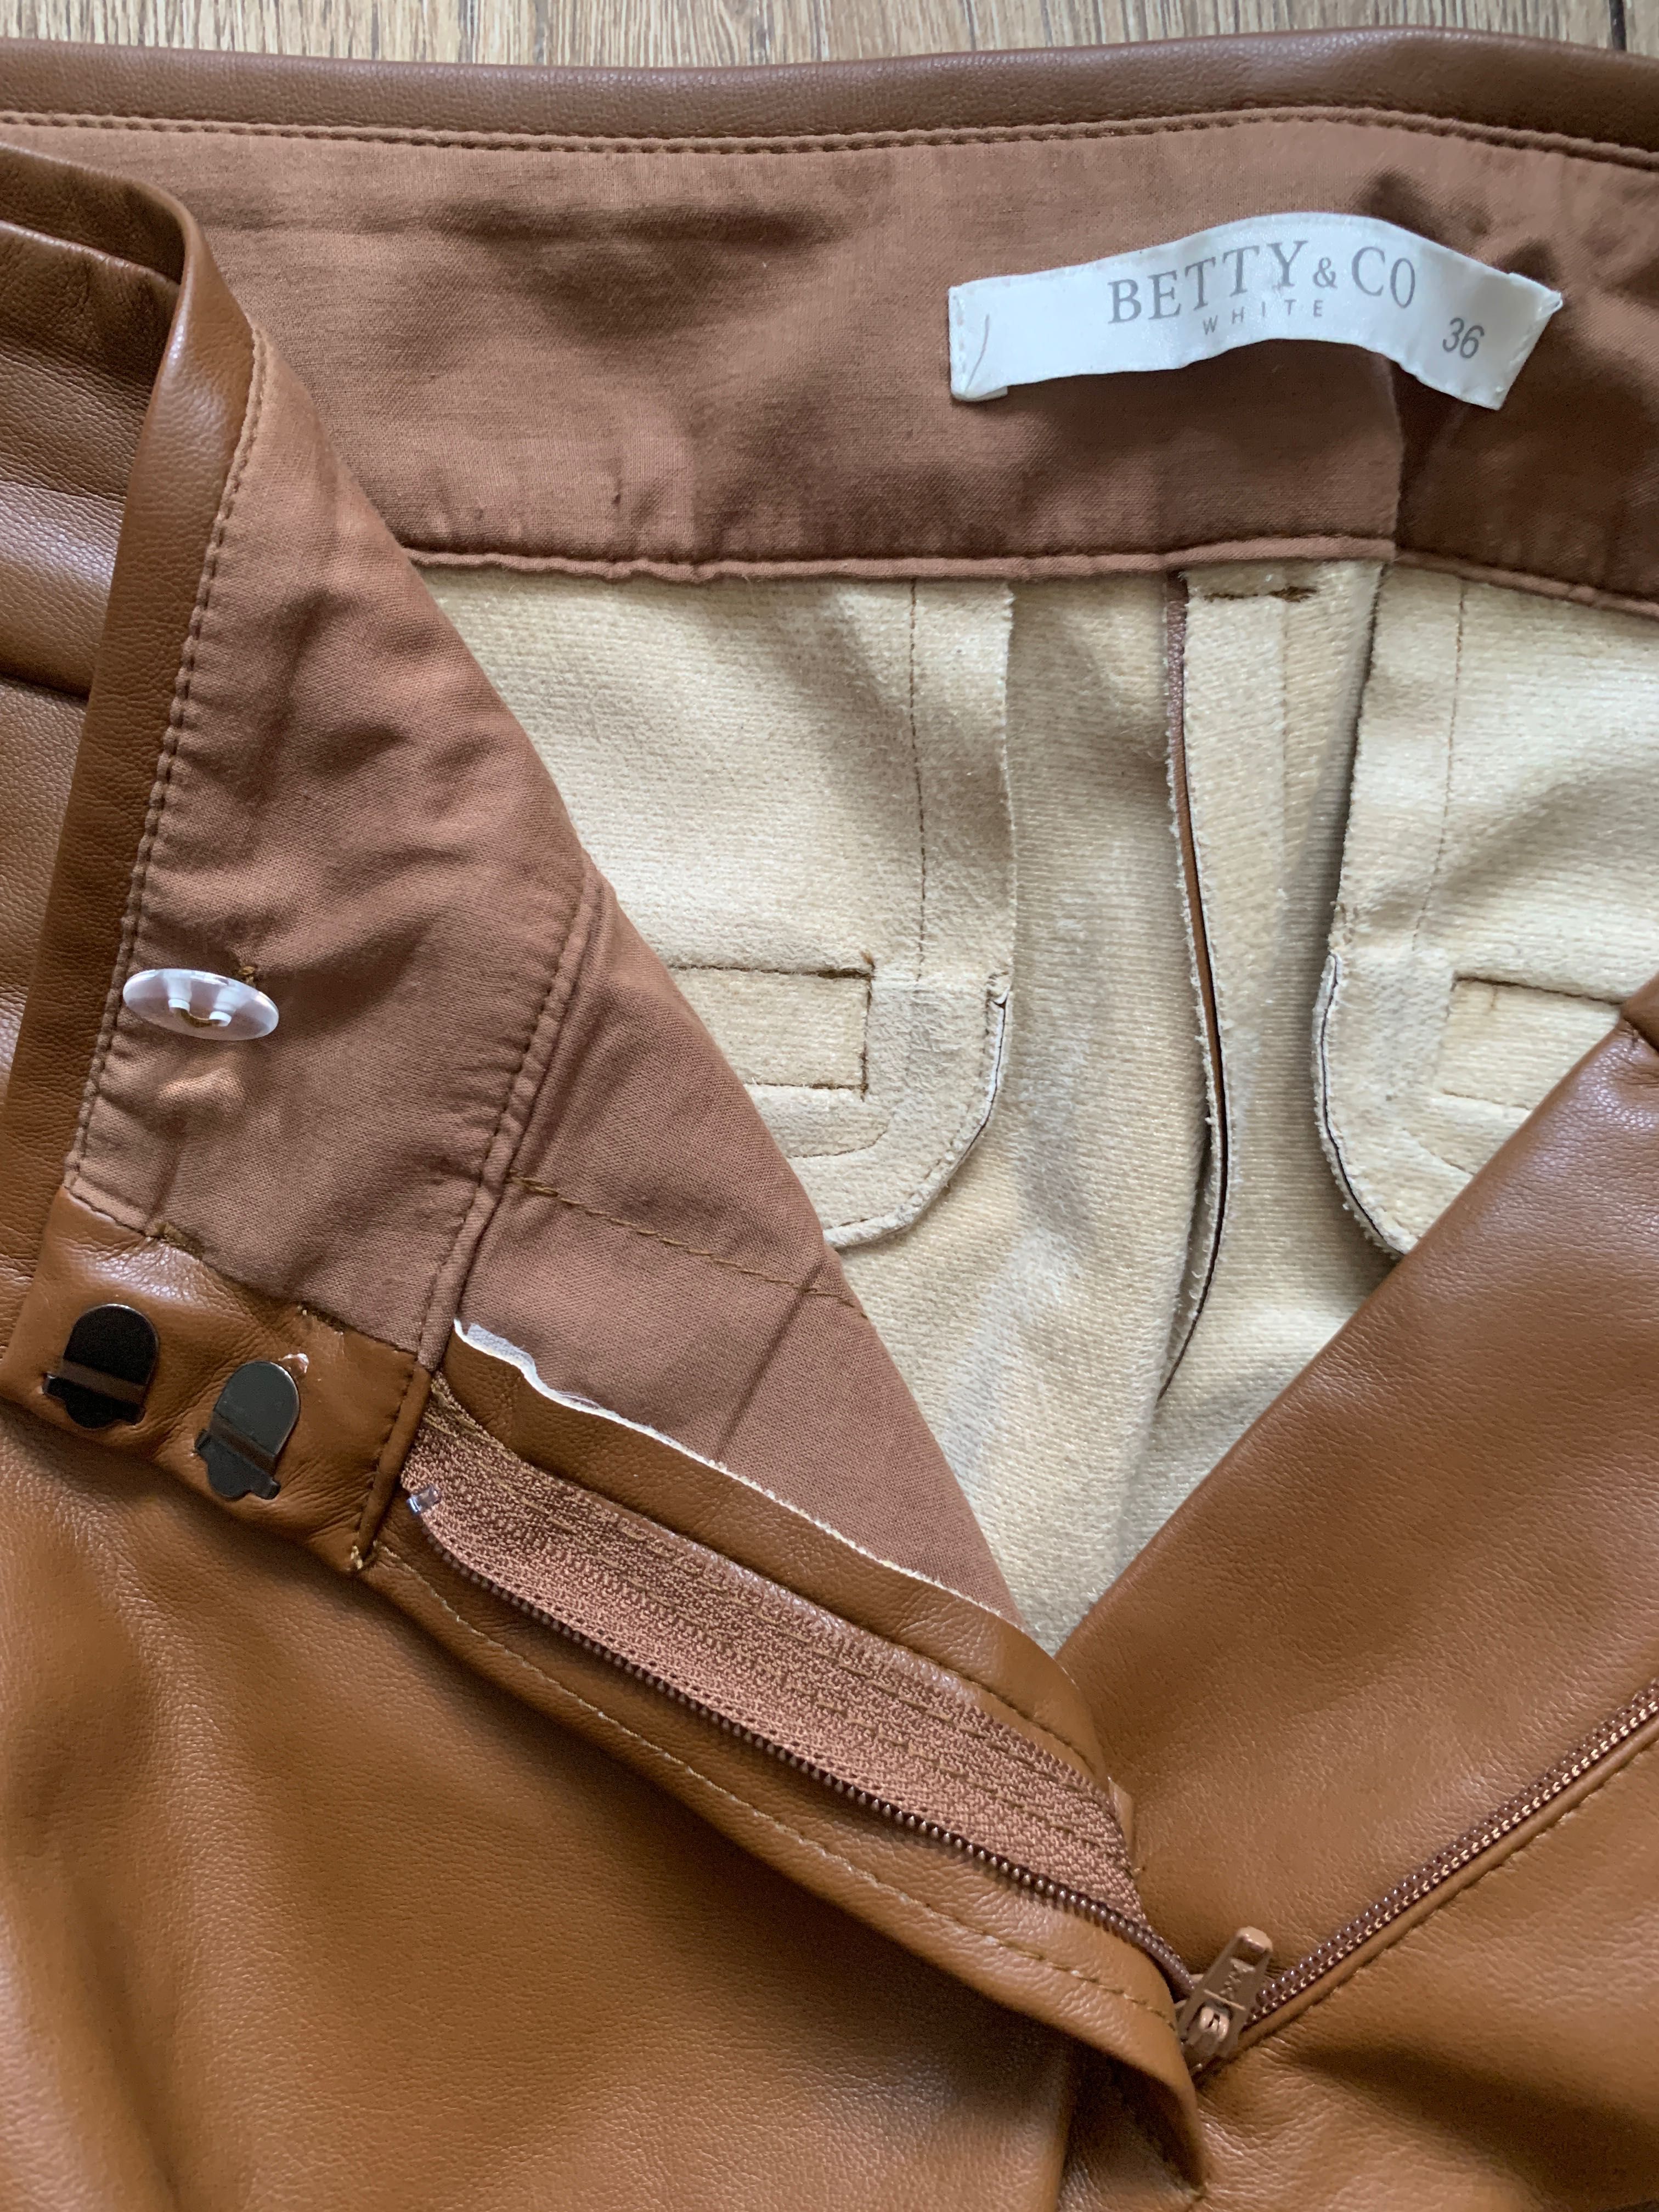 BETTY & CO WHITE
Spodnie z imitacji skóry - koniakowy